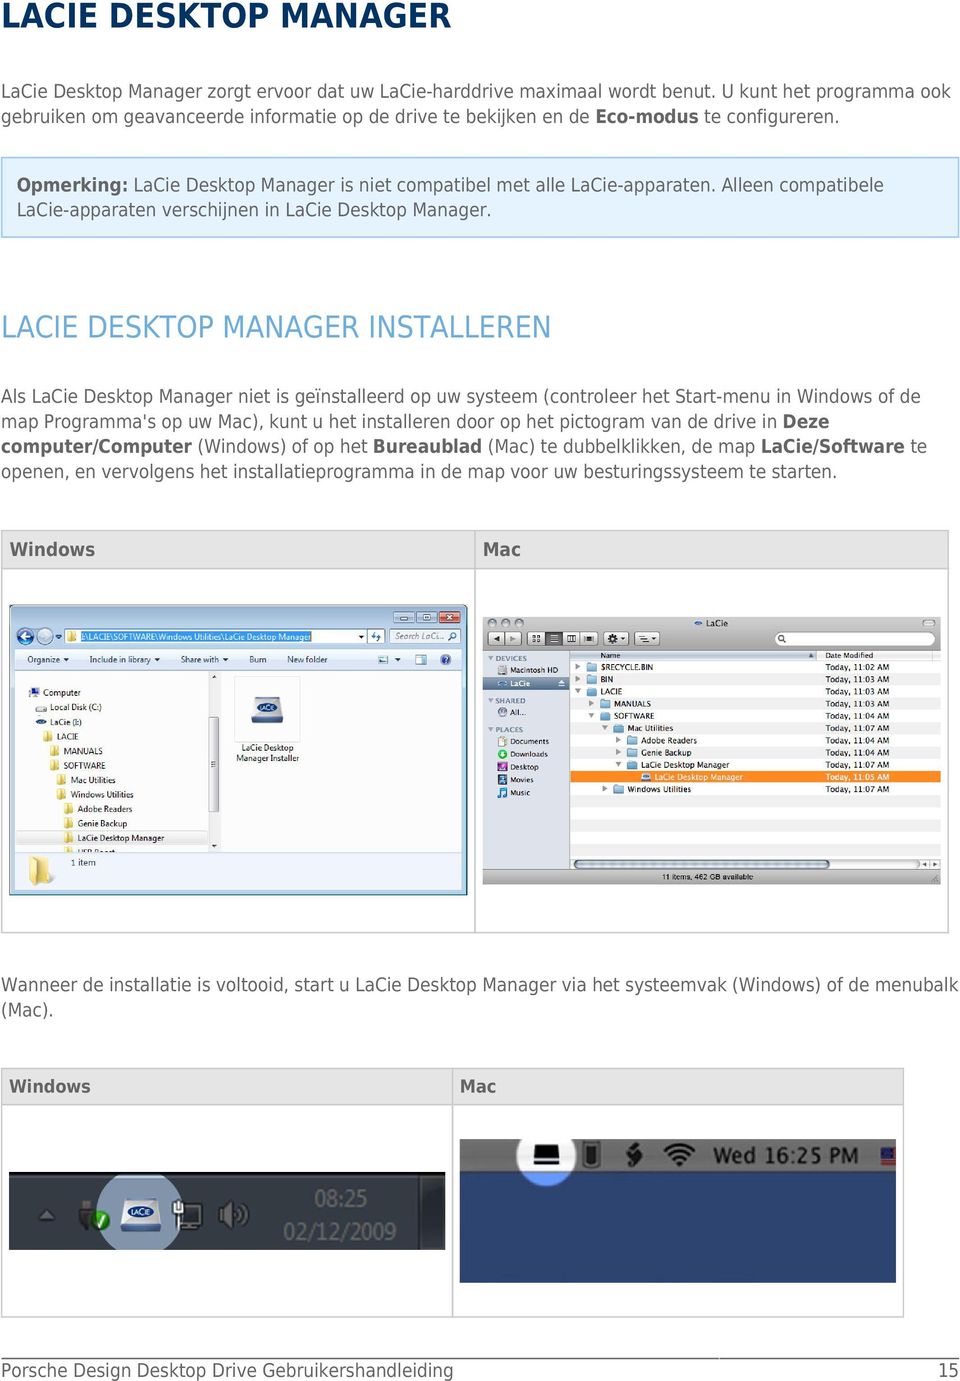 Alleen compatibele LaCie-apparaten verschijnen in LaCie Desktop Manager.